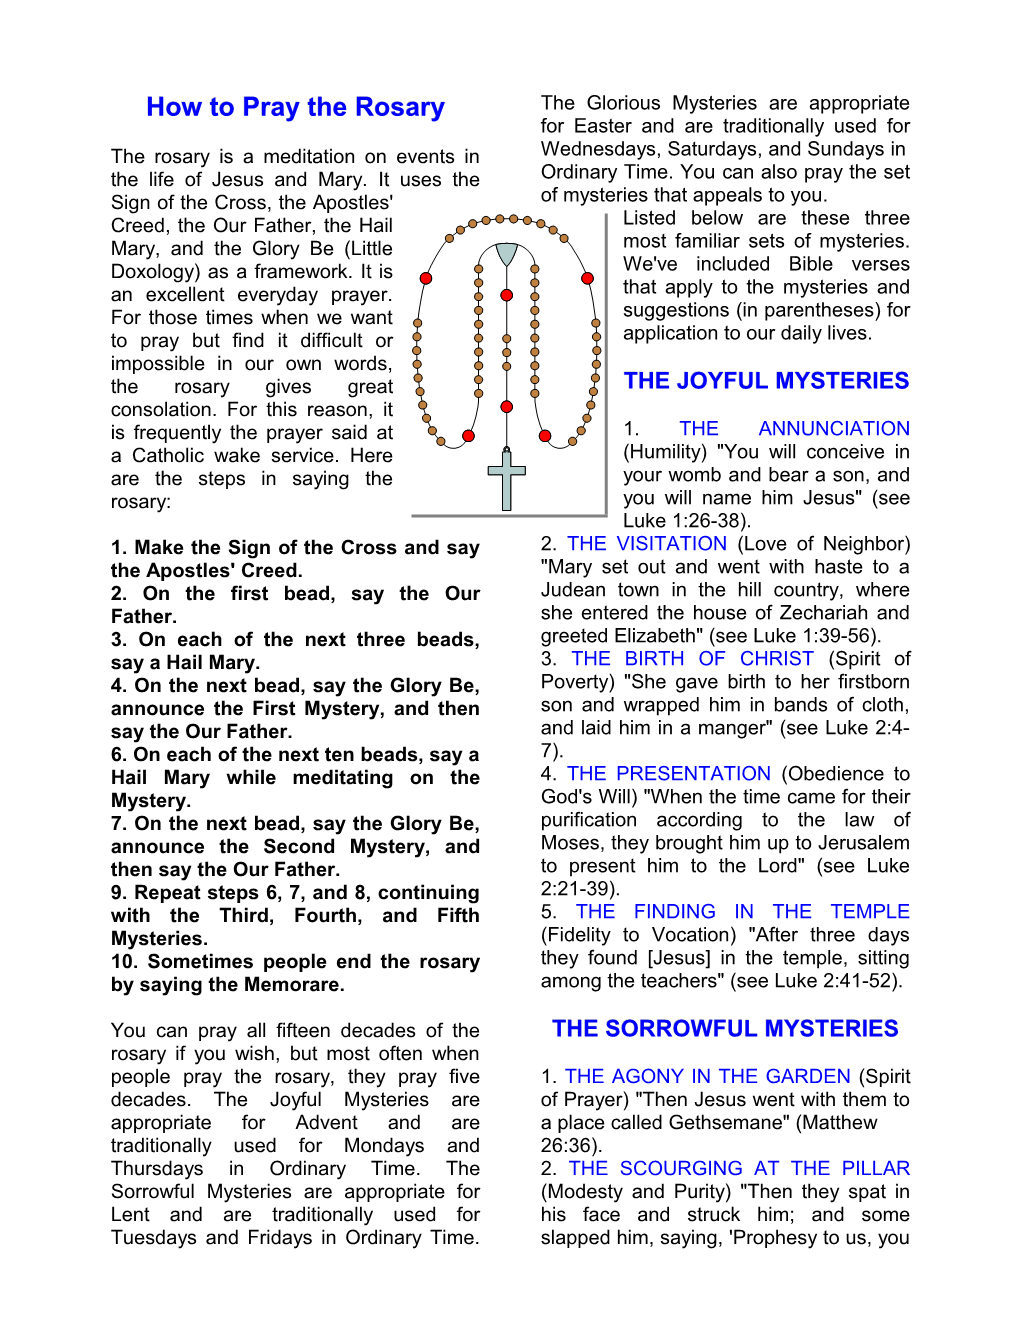 Rosary: How to Pray the Rosary